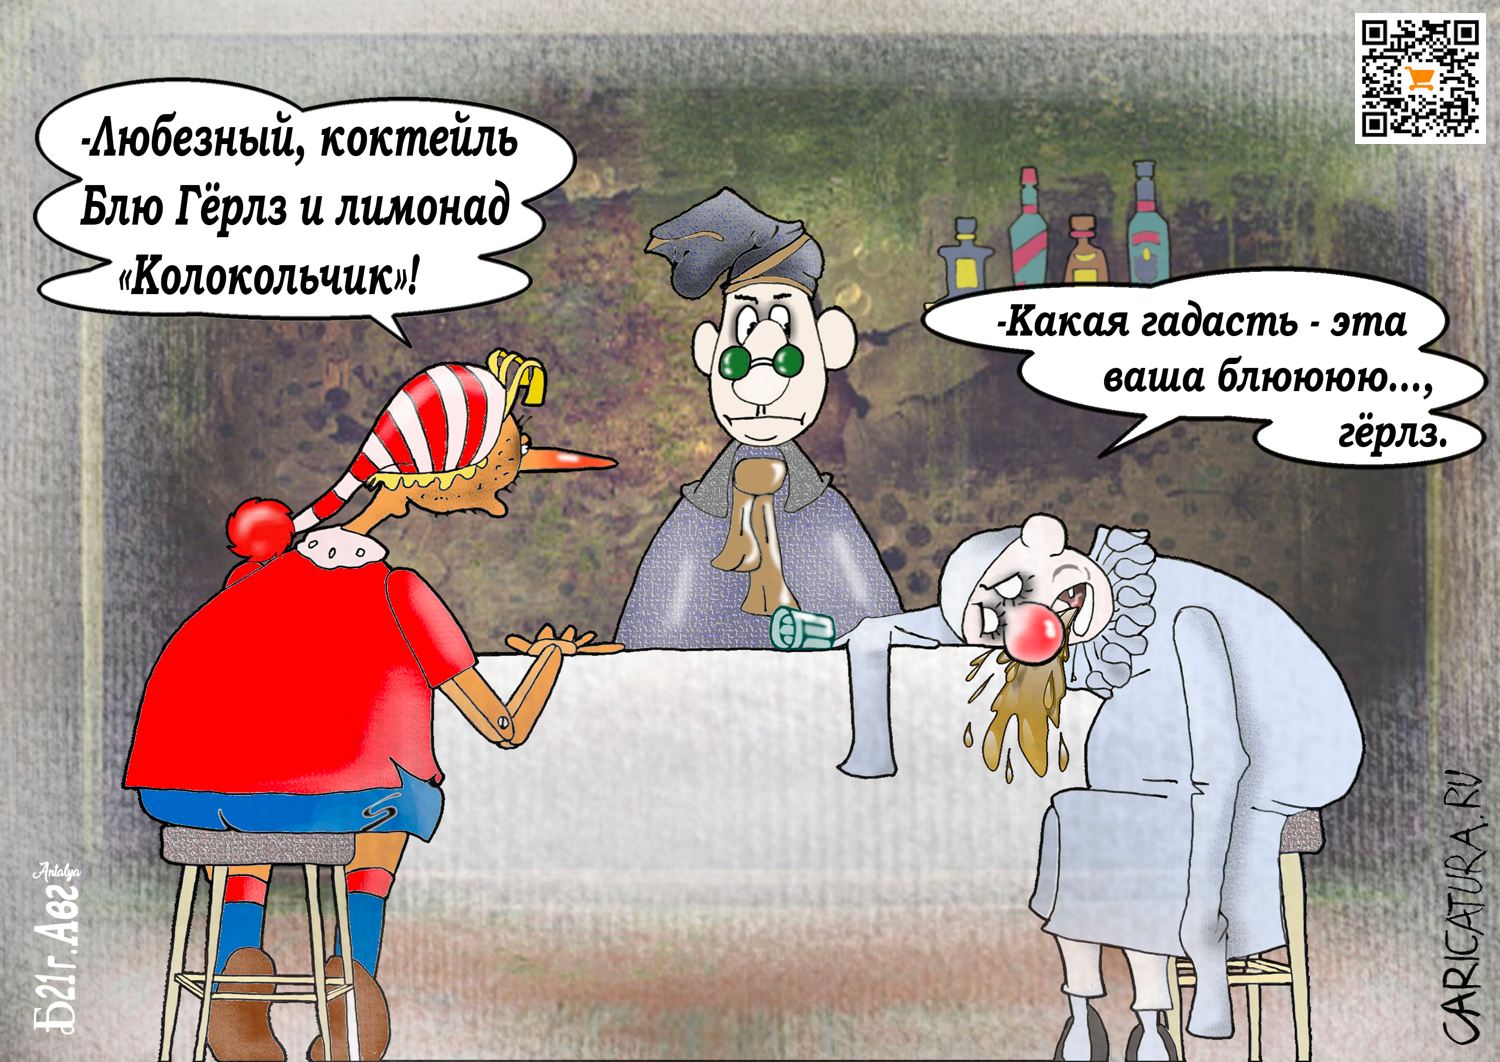 Карикатура "ПроБЛЮгёрлз", Борис Демин